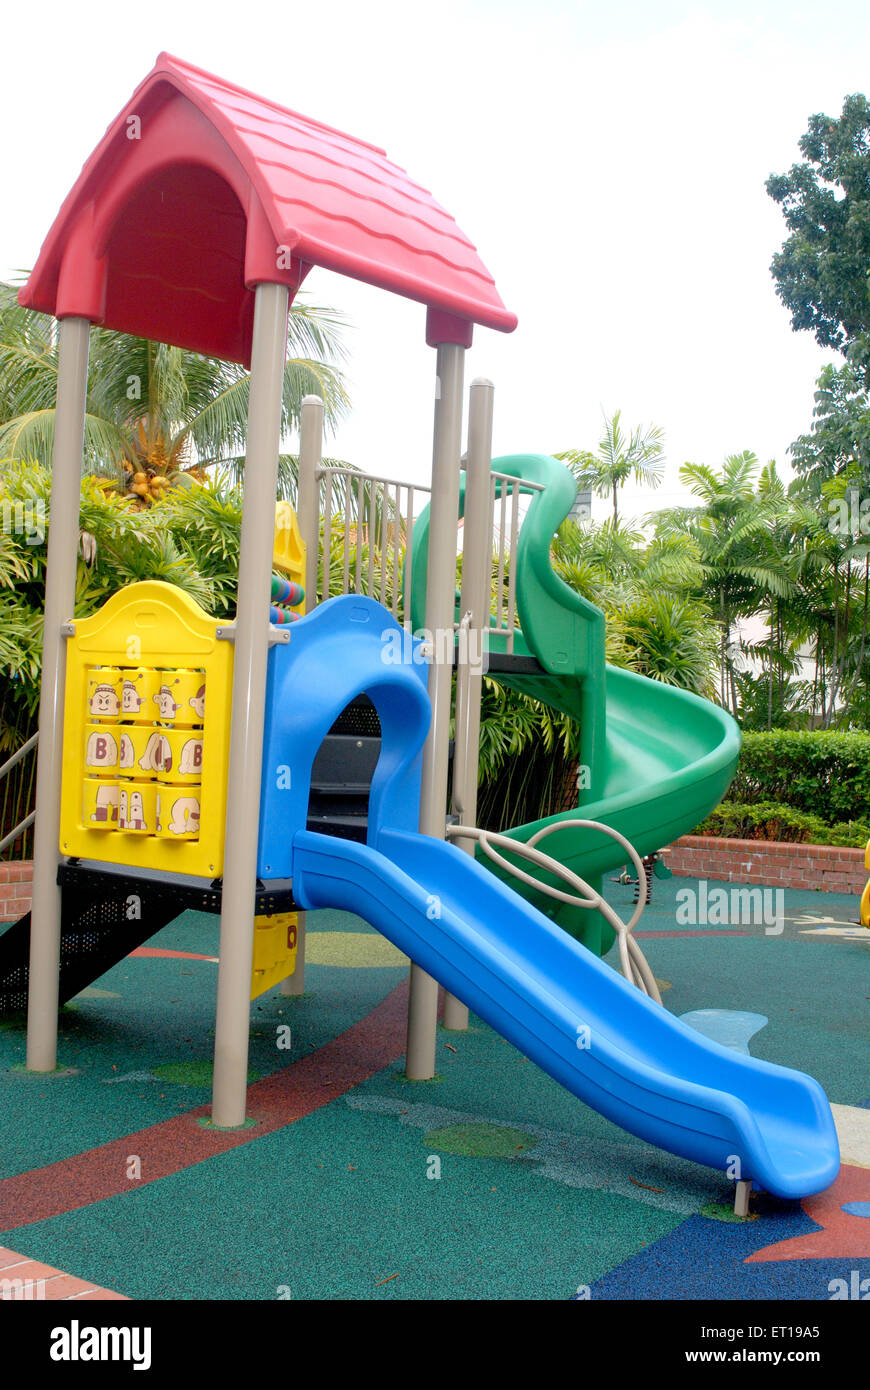 Children playground, plastic slide, kids play equipment, Stock Photo